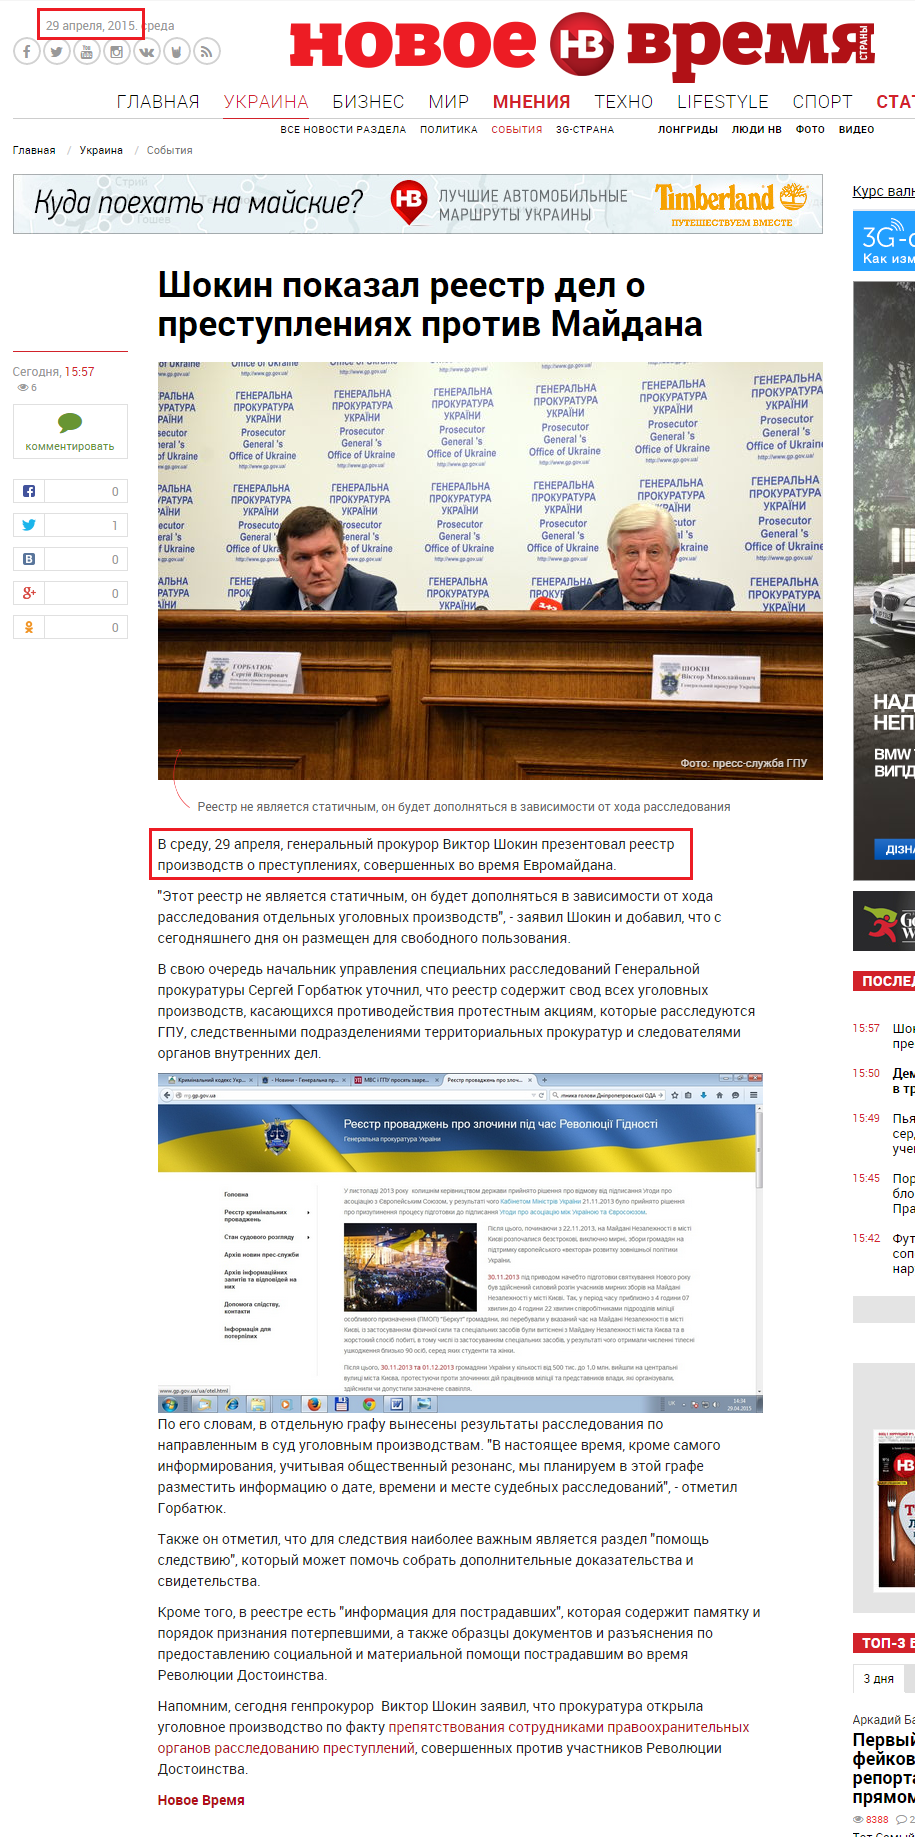 http://nv.ua/ukraine/events/shokin-pokazal-reestr-del-o-prestupleniyah-protiv-maydana-46393.html